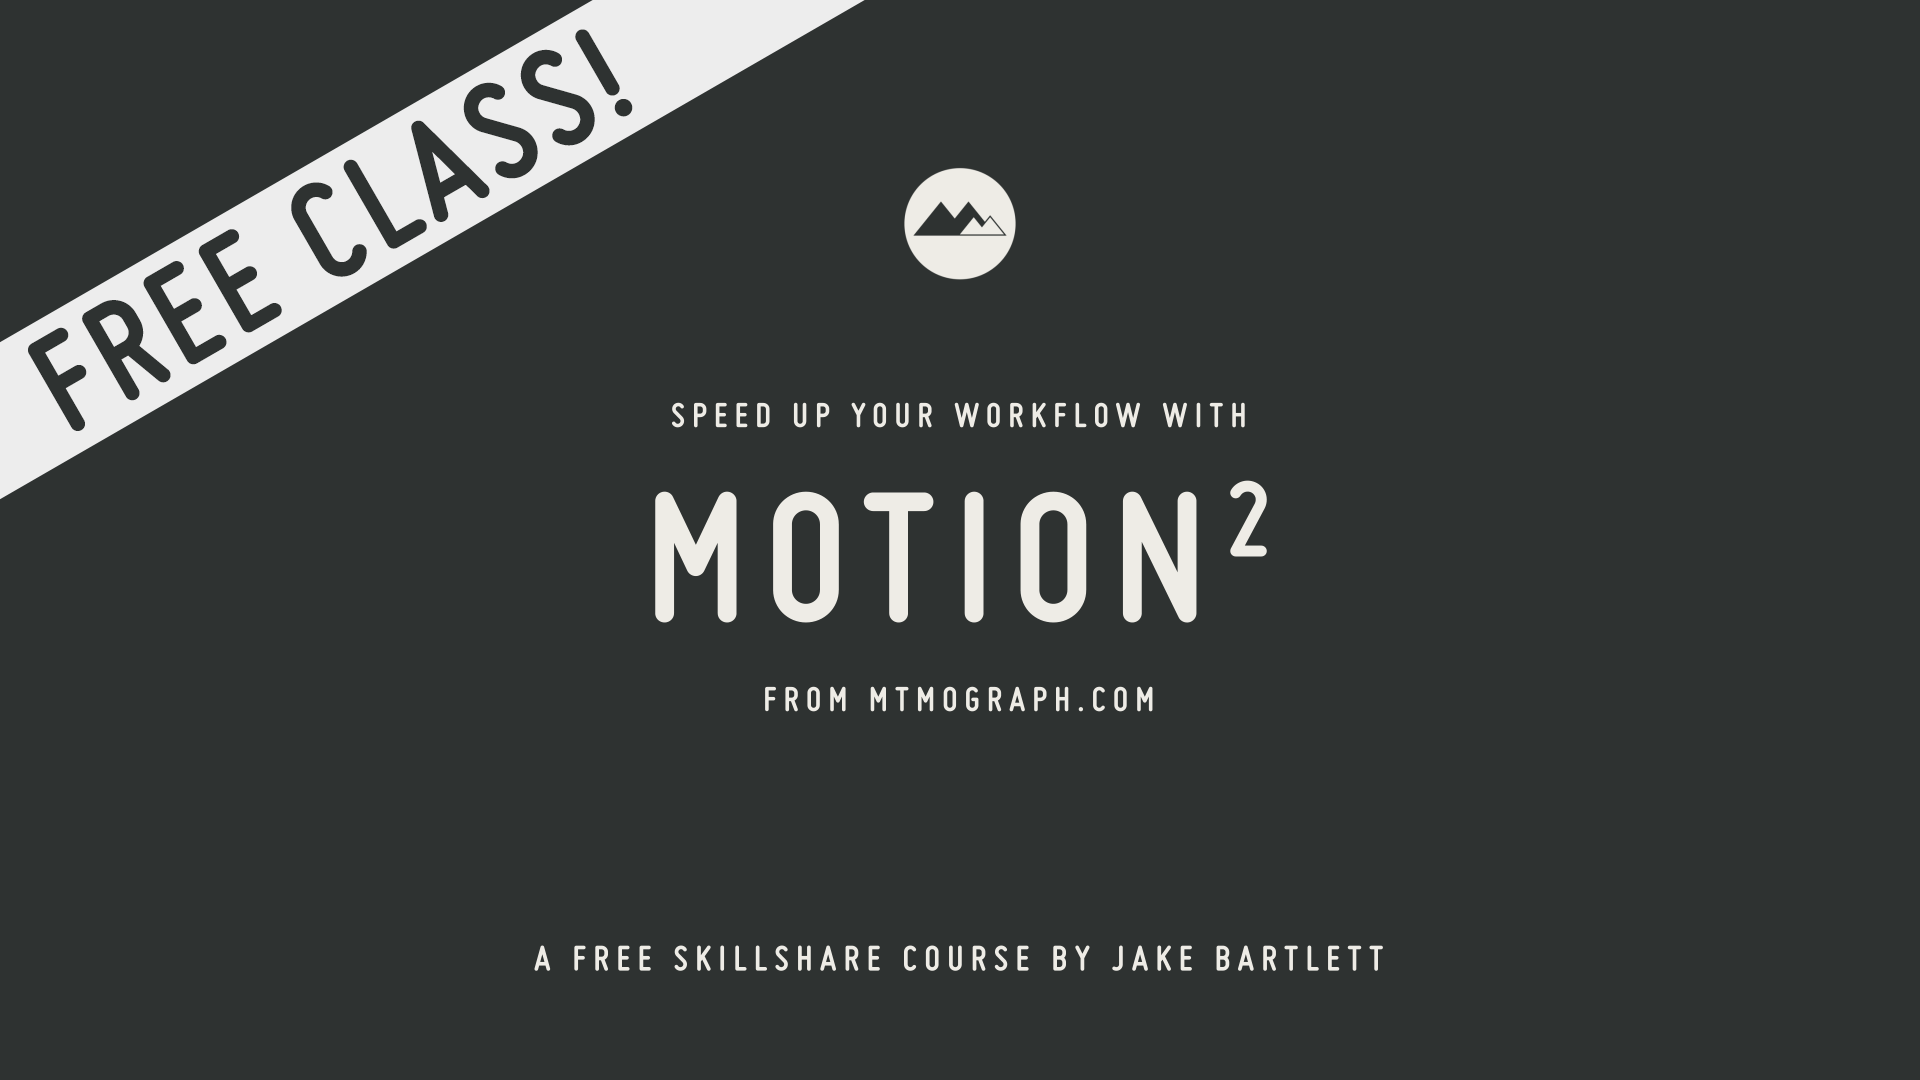 آموزش سرعت گردش کار خود را با Motion2 از Mt. Mograph افزایش دهید